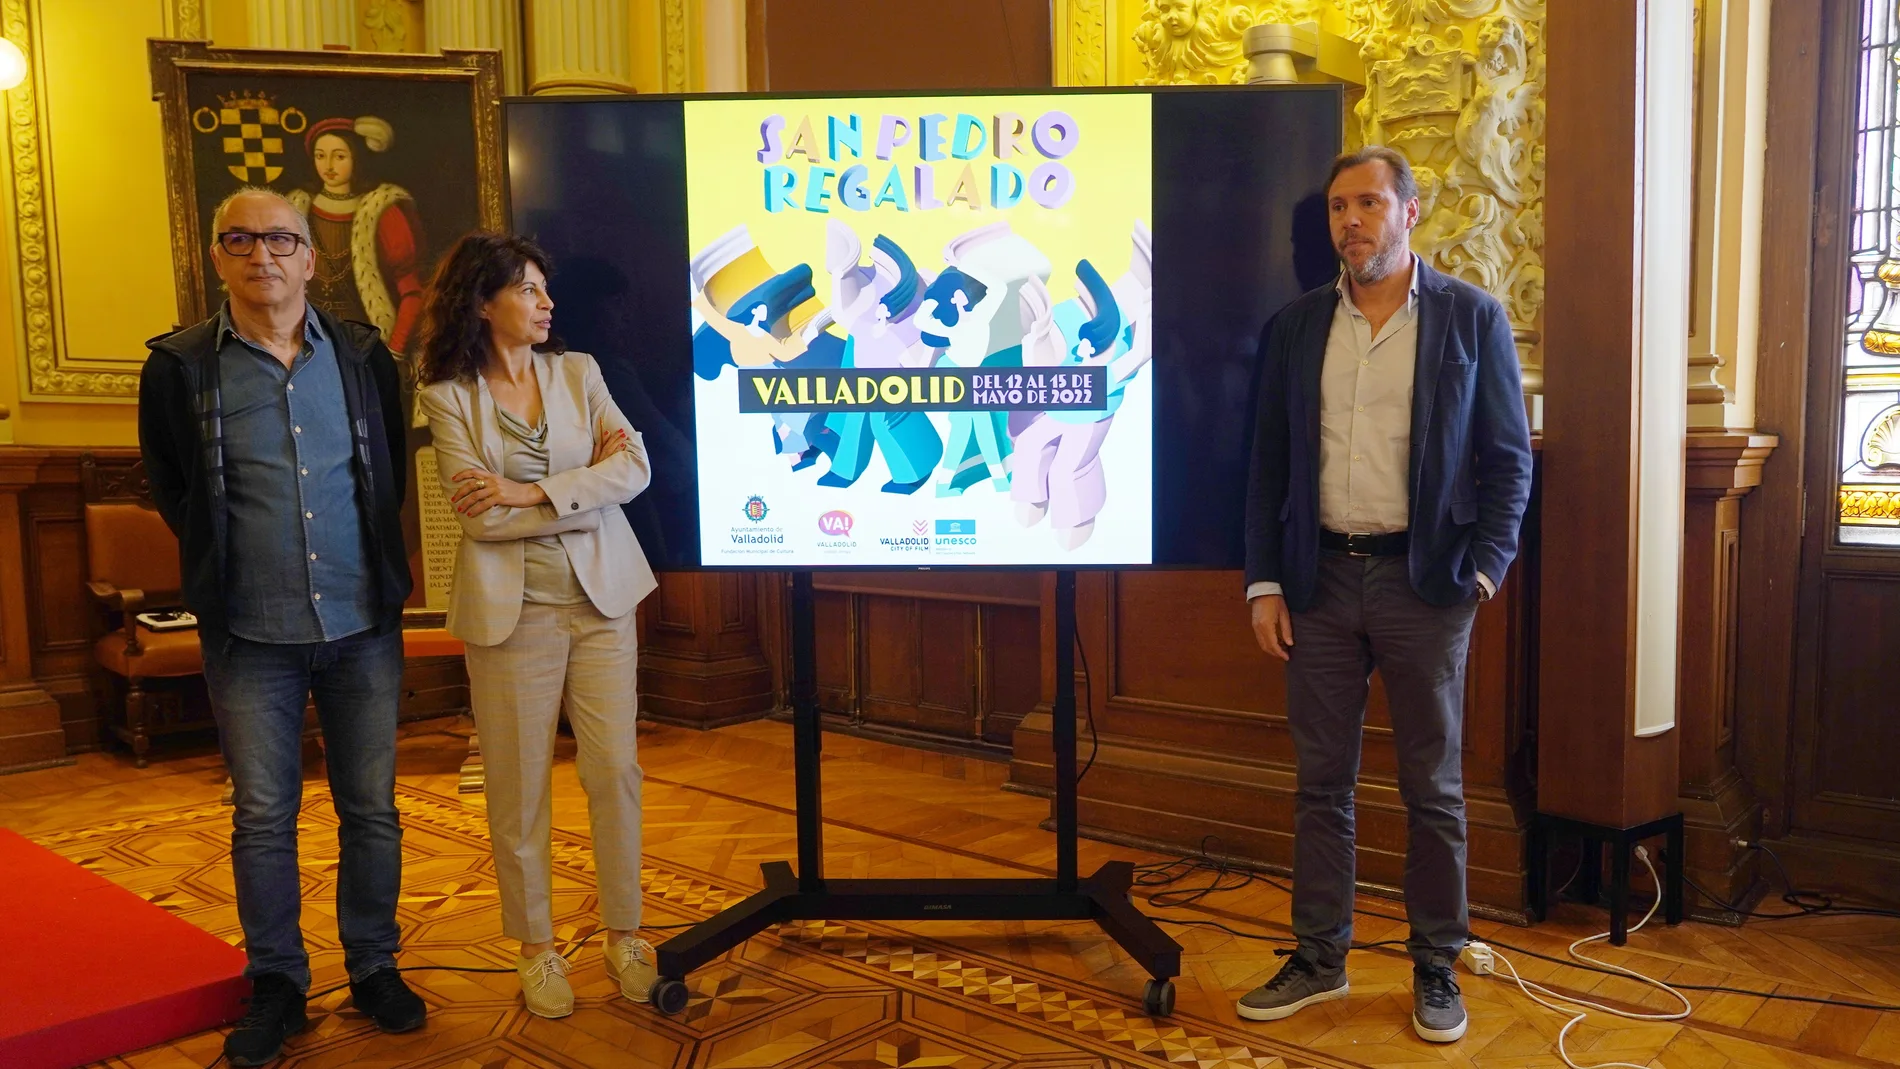 El alcalde de Valladolid, Óscar Puente, presenta el programa de las Fiestas Patronales de San Pedro Regalado junto a la concejal Ana Redondo